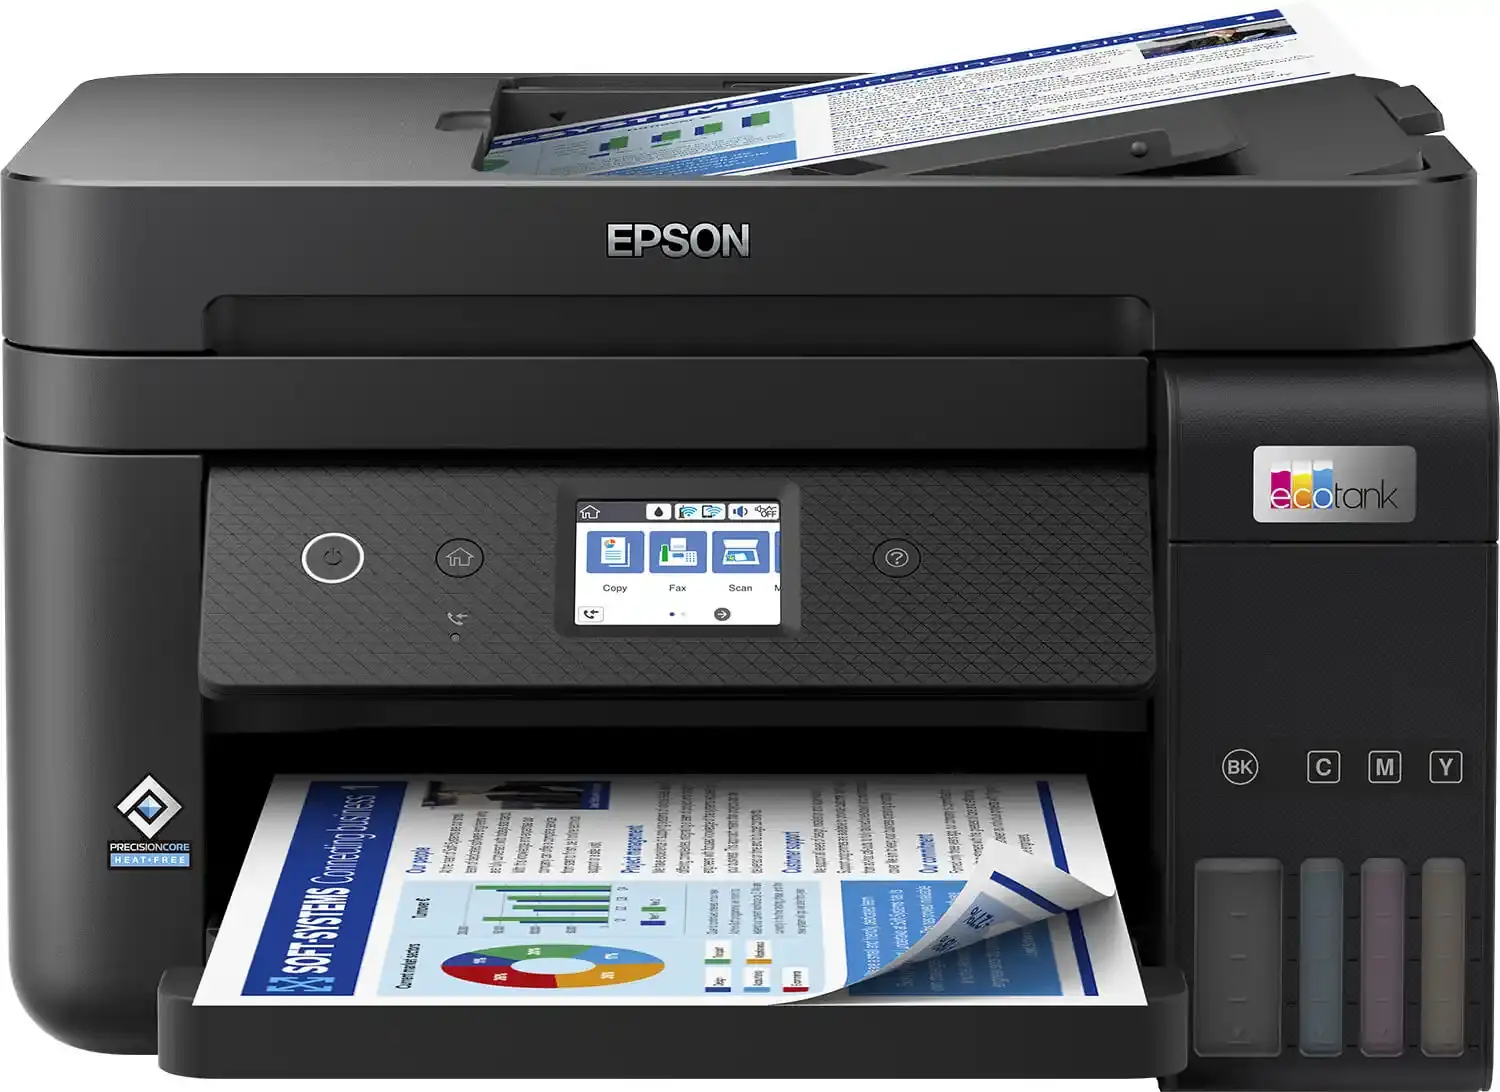 EPSON Multifunkcionalni štampač ECO Tank L6290 4800x1200dpi/256MB/CB15ppm/COL8,5ppm/USB/WiFI/Ink 101 crni